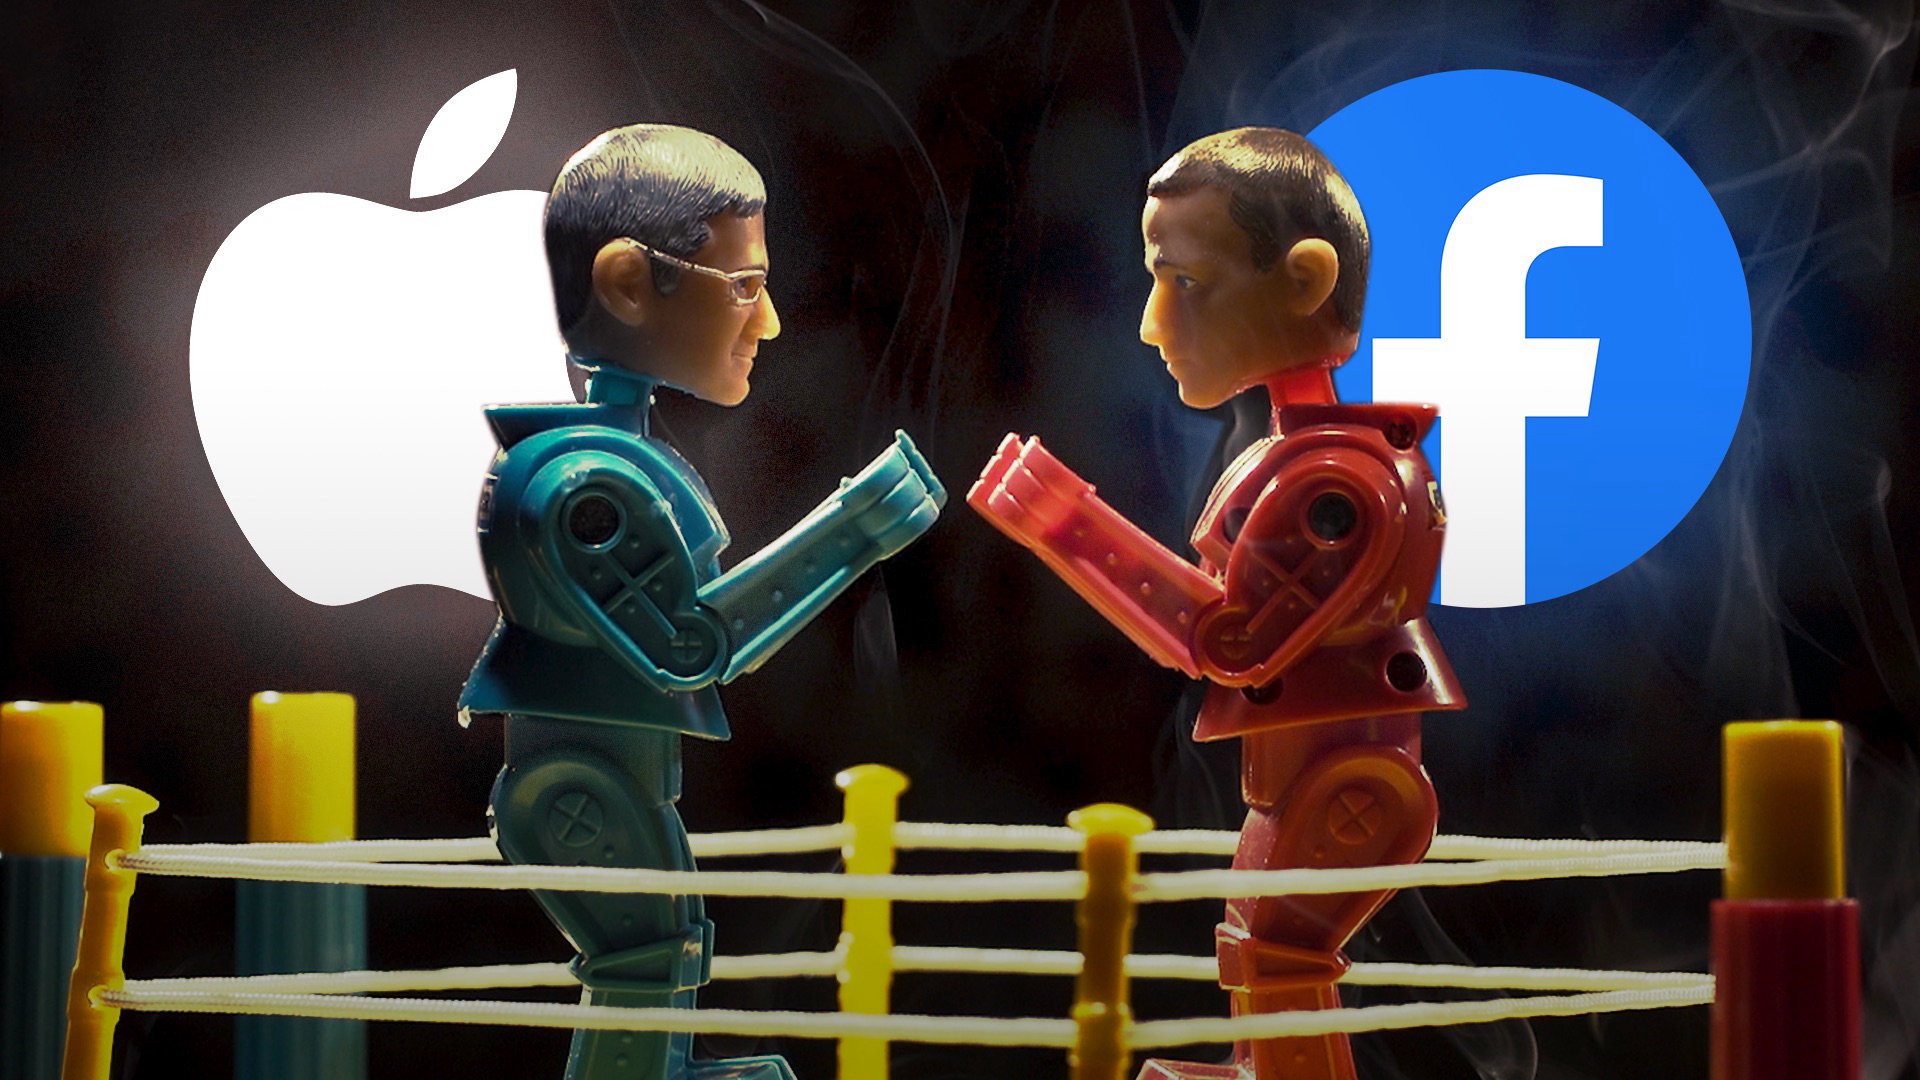 Η Apple ζήτησε μερίδιο από τις διαφημιστικές πωλήσεις του Facebook χρόνια πριν "επιτεθεί" στο διαφημιστικό του μοντέλο